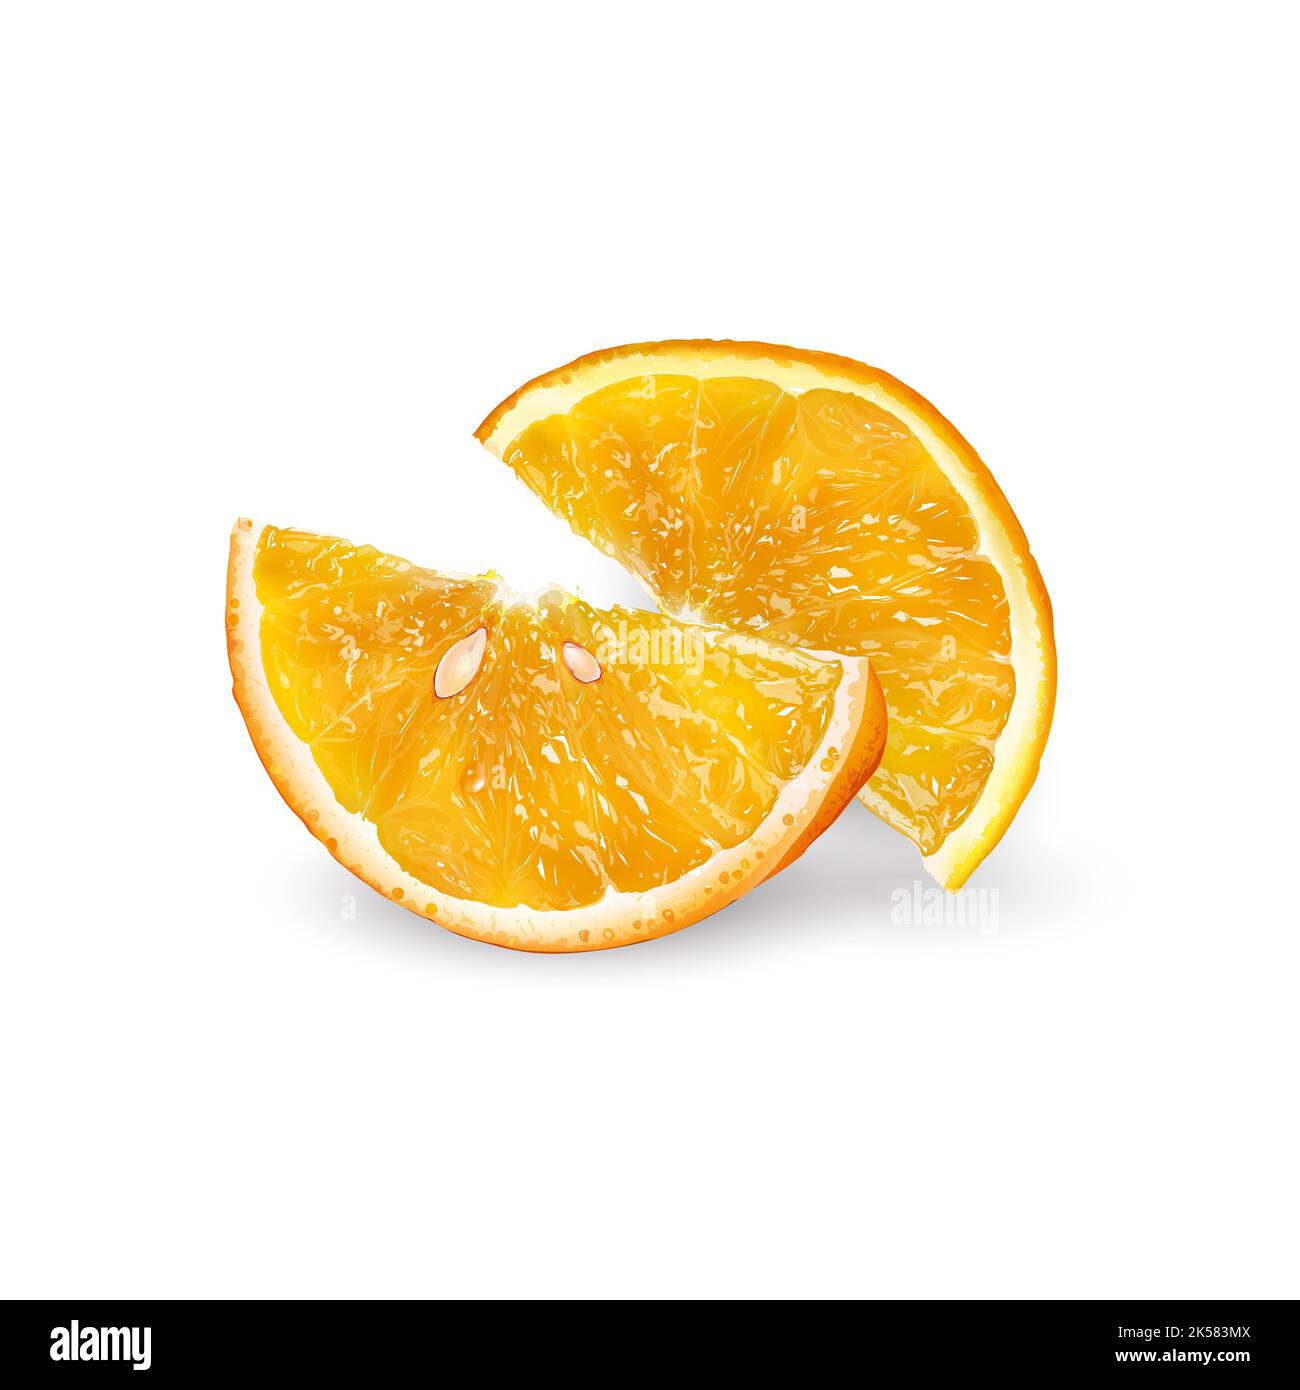 Two orange slices on a white background. Stock Photo